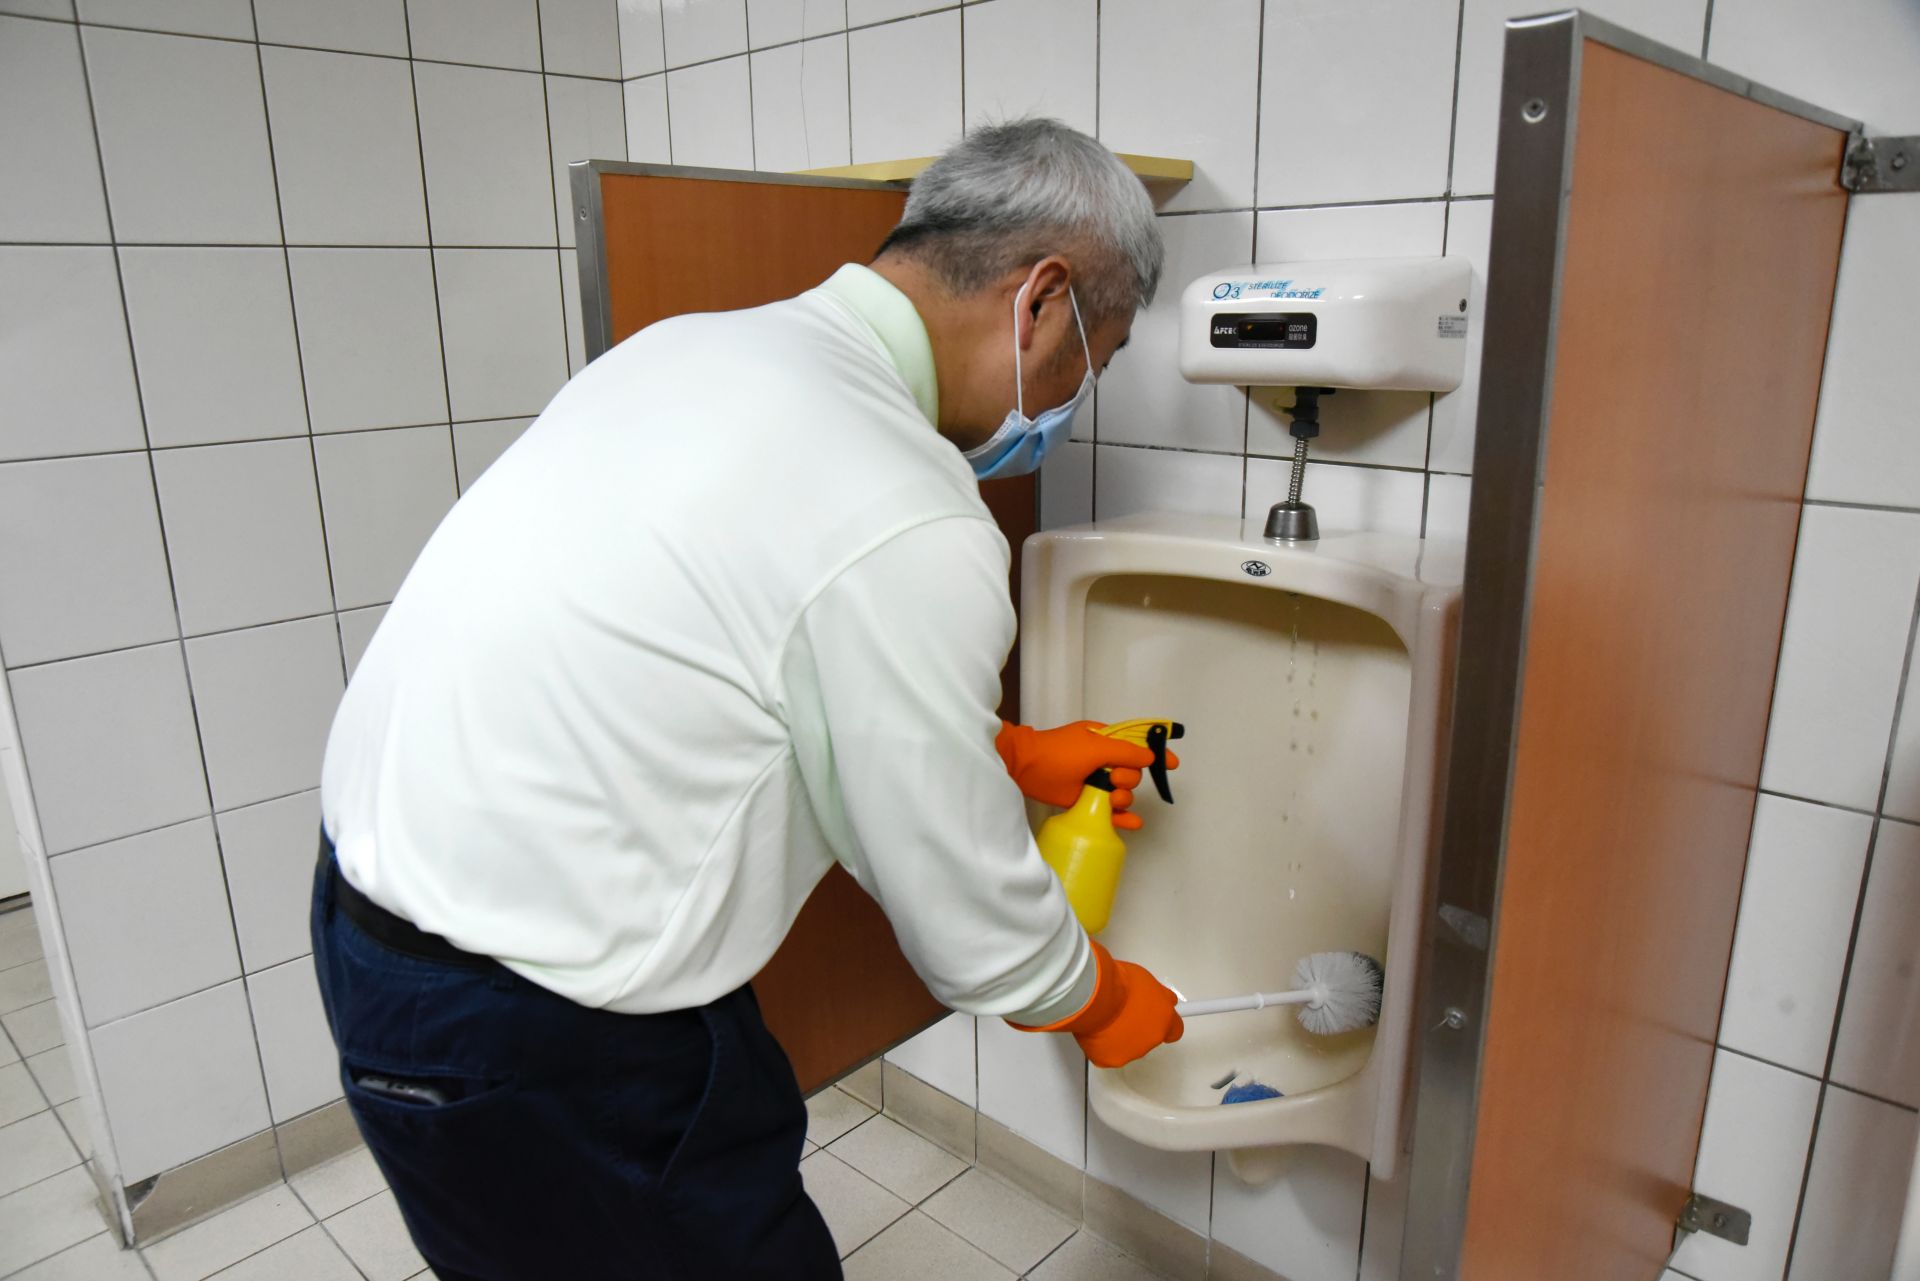 陳金城副院長帶領一支隊伍前往門診區，使用清潔劑和刷子清潔廁所，希望打掃能凝聚力量與共識，期待評鑑能順利通過。